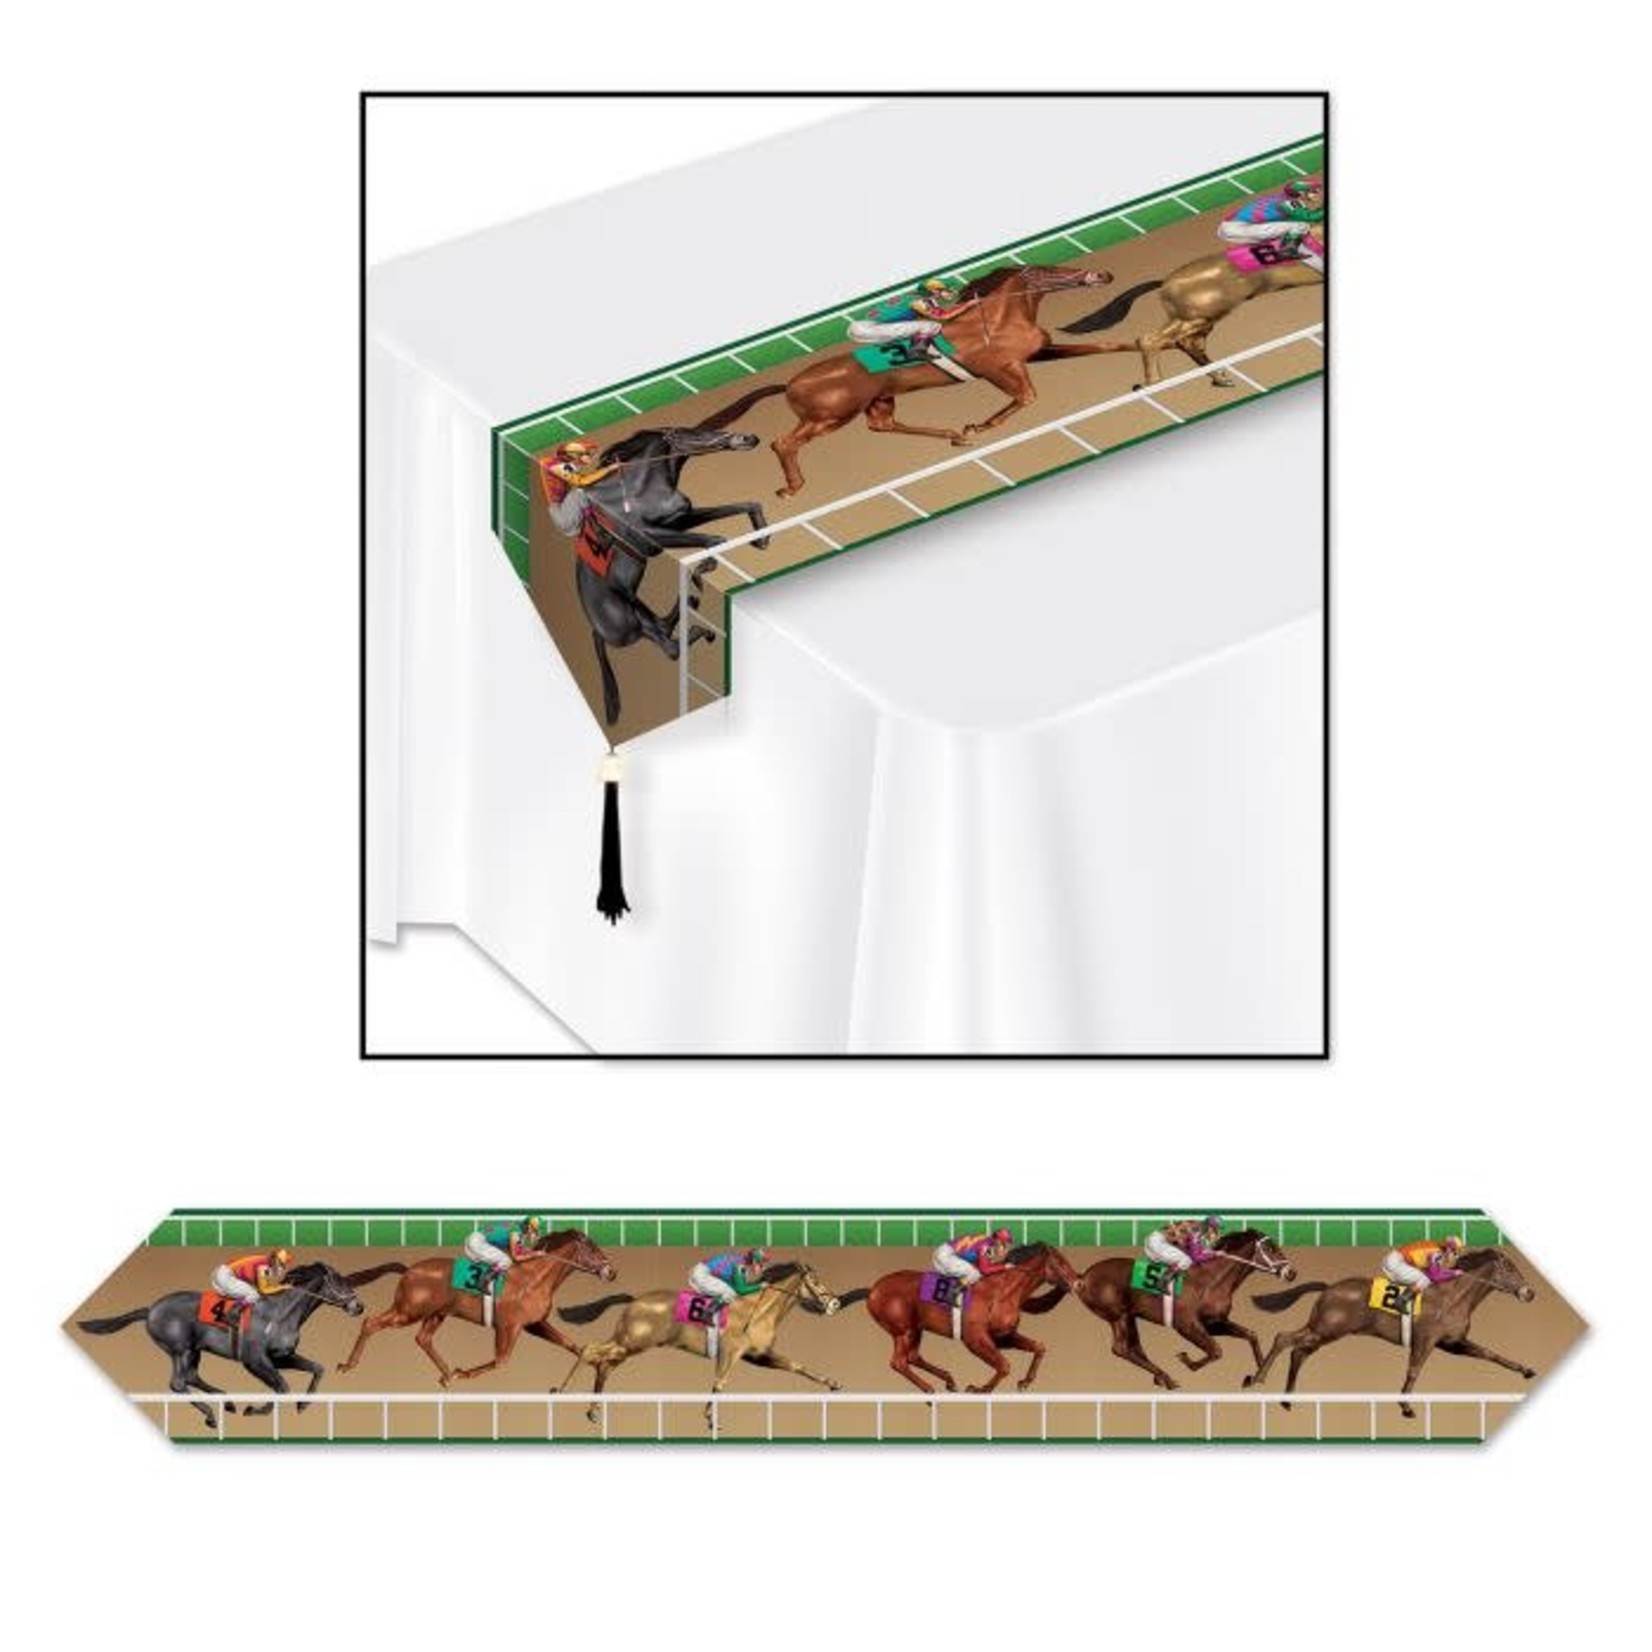 Western Printed Horse Racing Table Runner